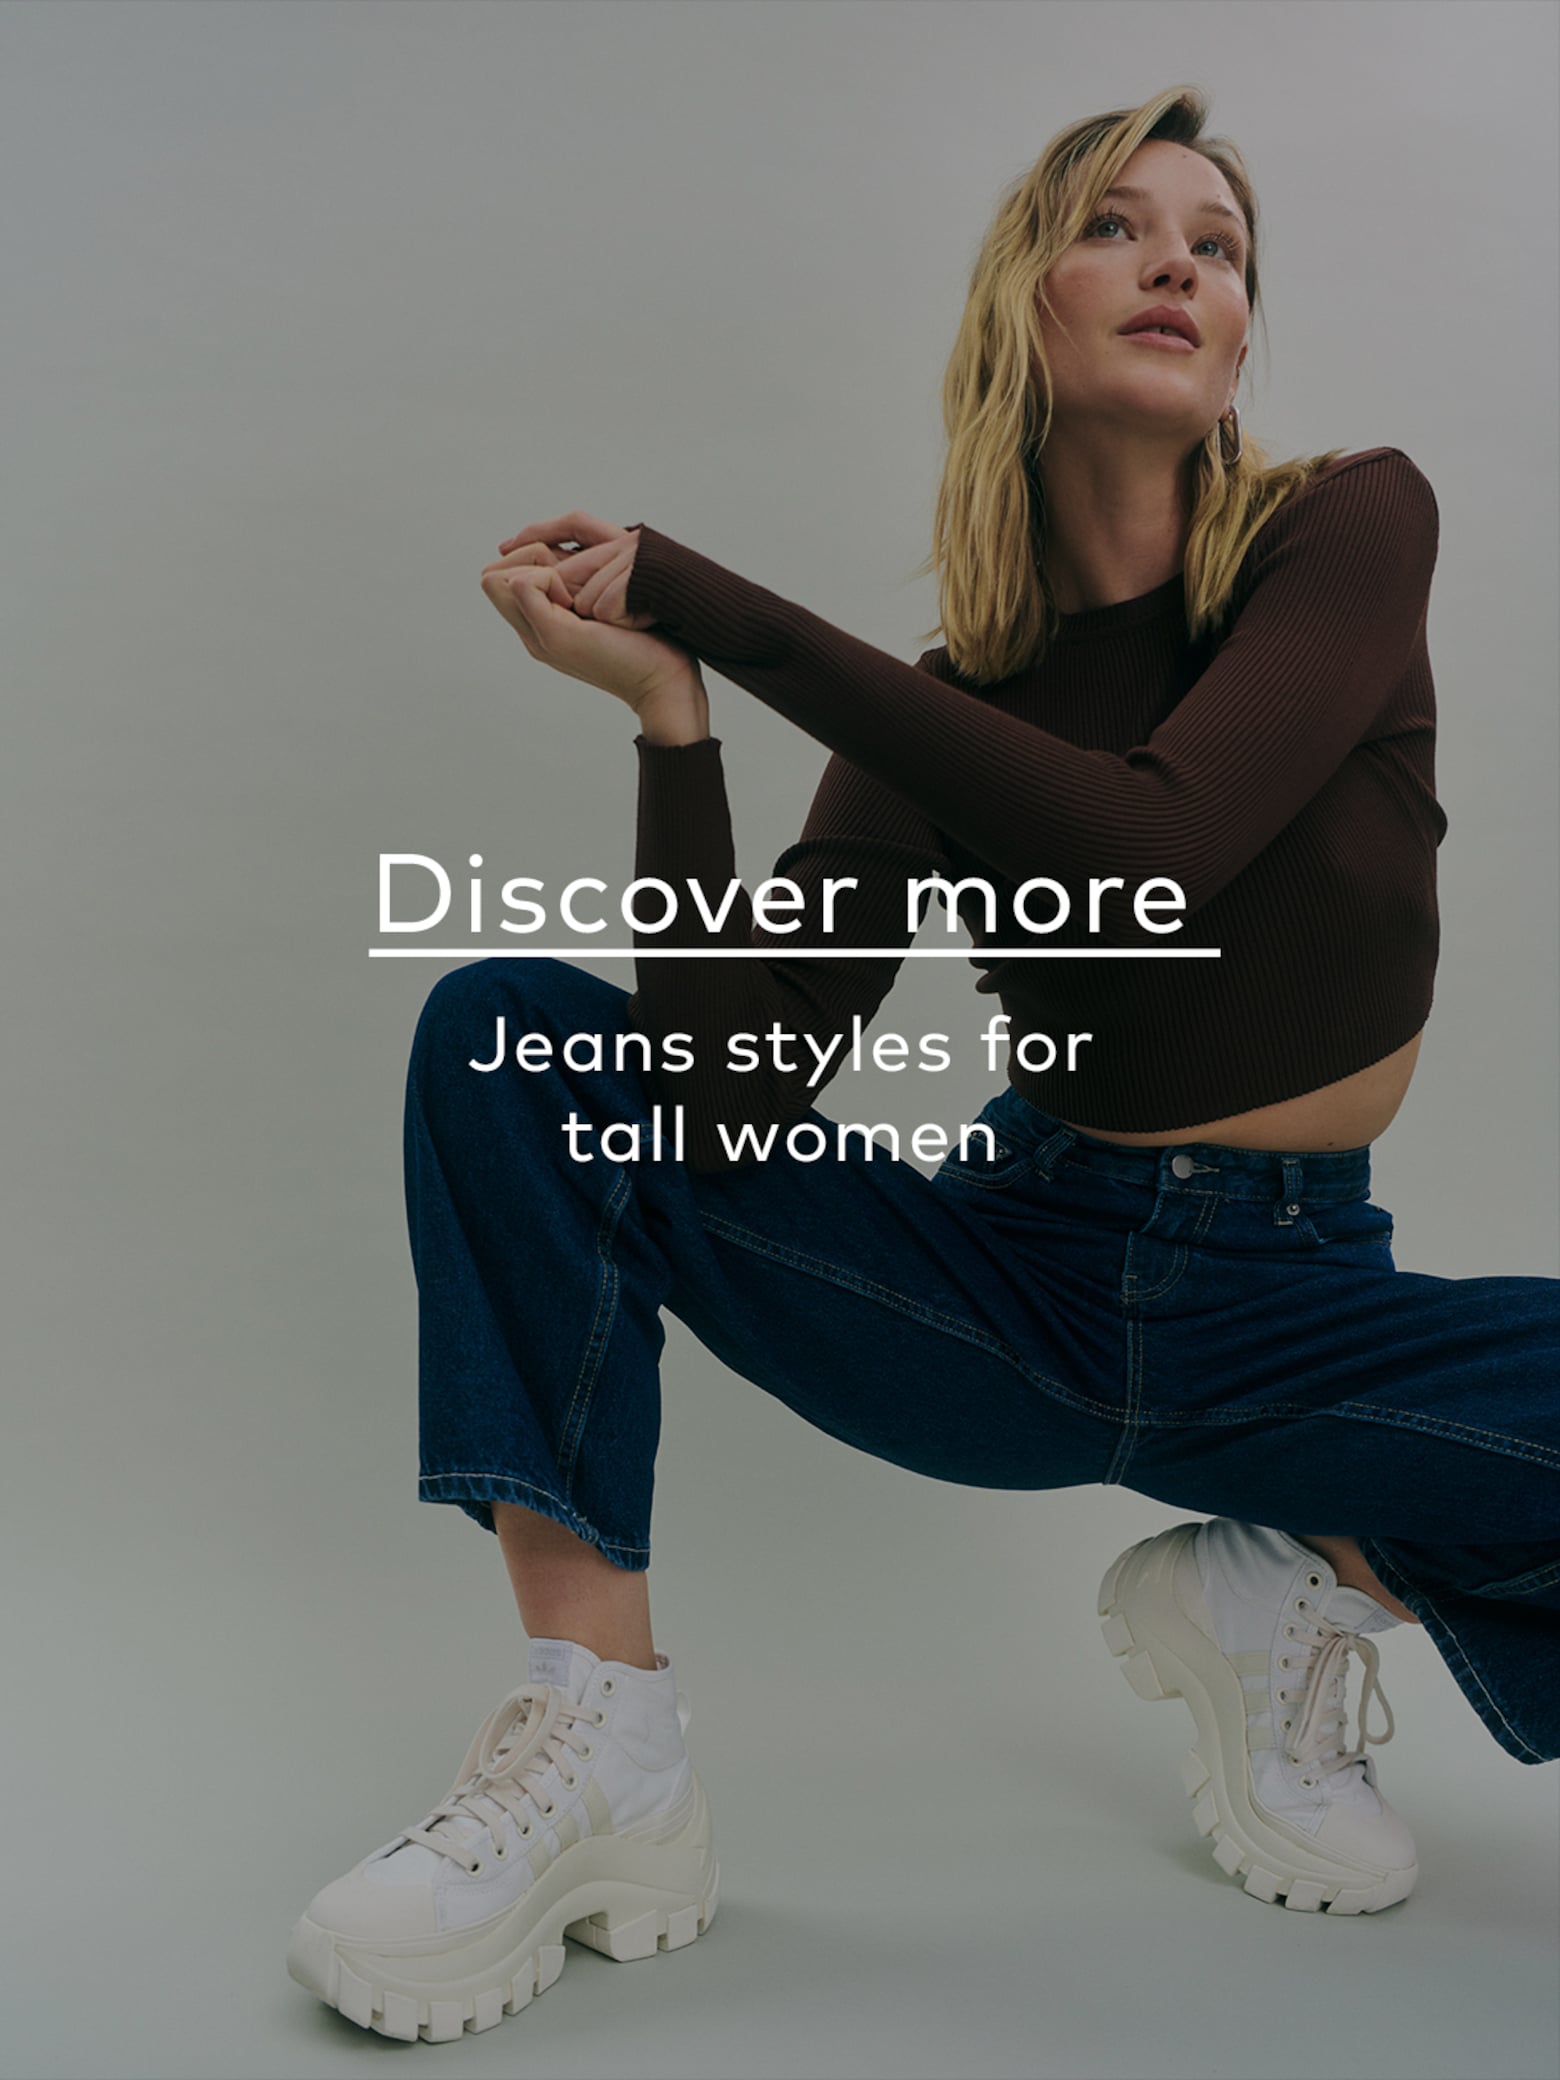 Alles außer gewöhnlich Jeans-Styles für jede Figur